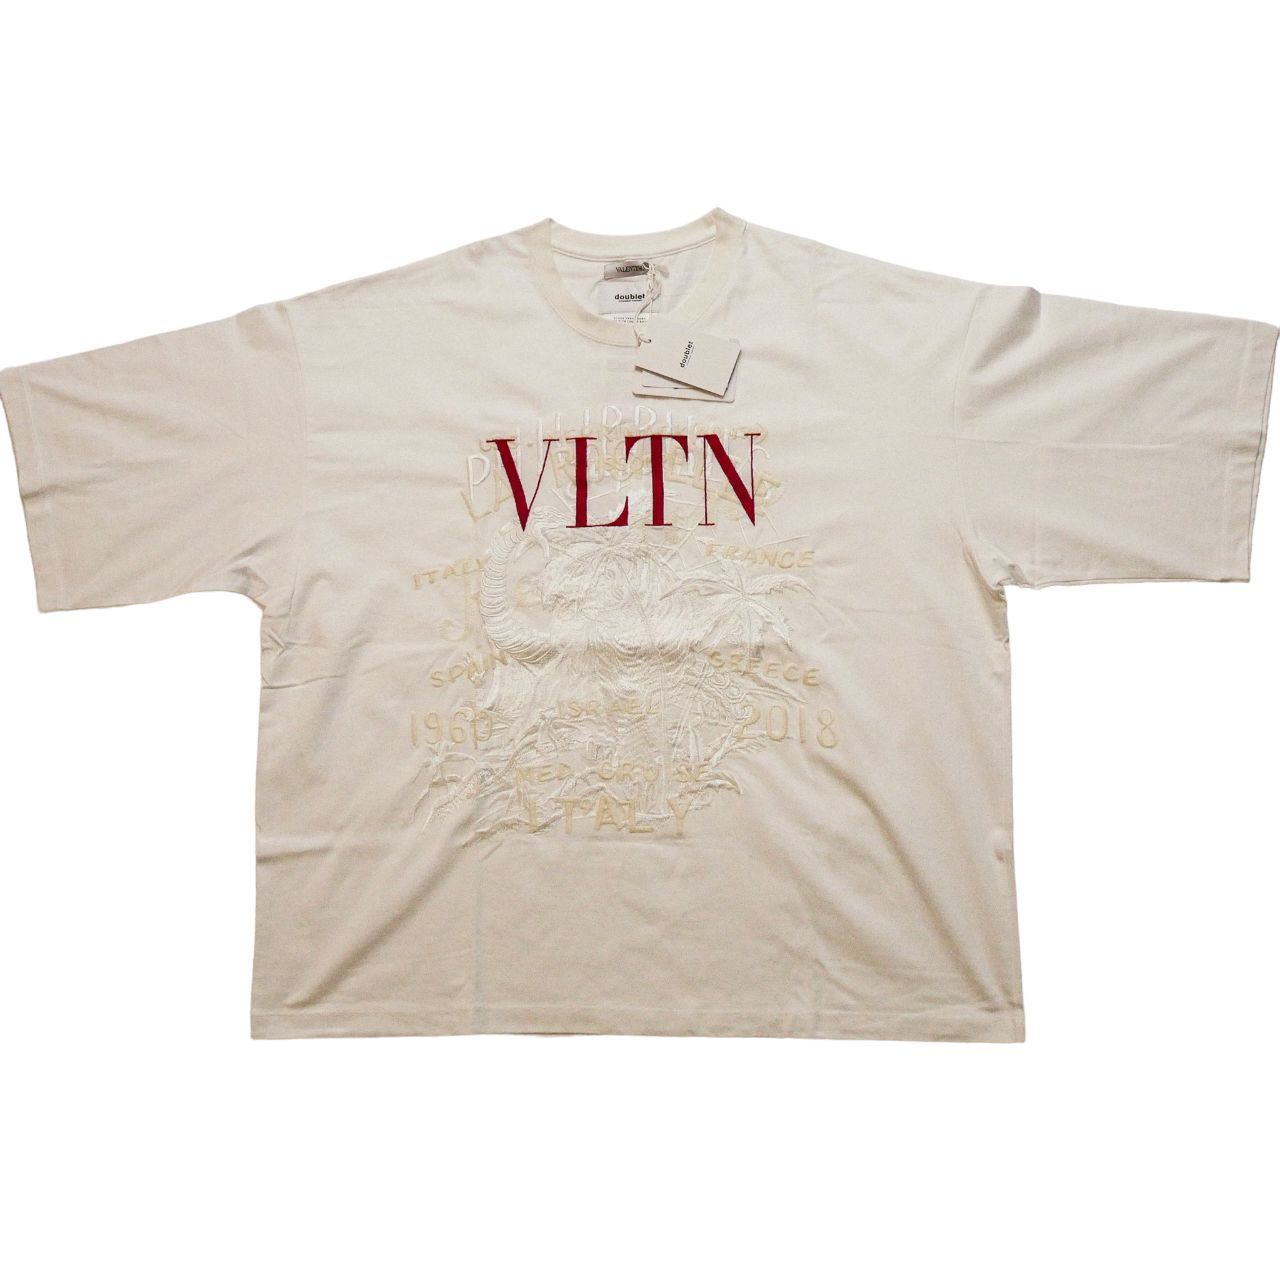 DOUBLET x valentino コラボ 刺繍 Tシャツ サイズL ダブレット ヴァレンチノ